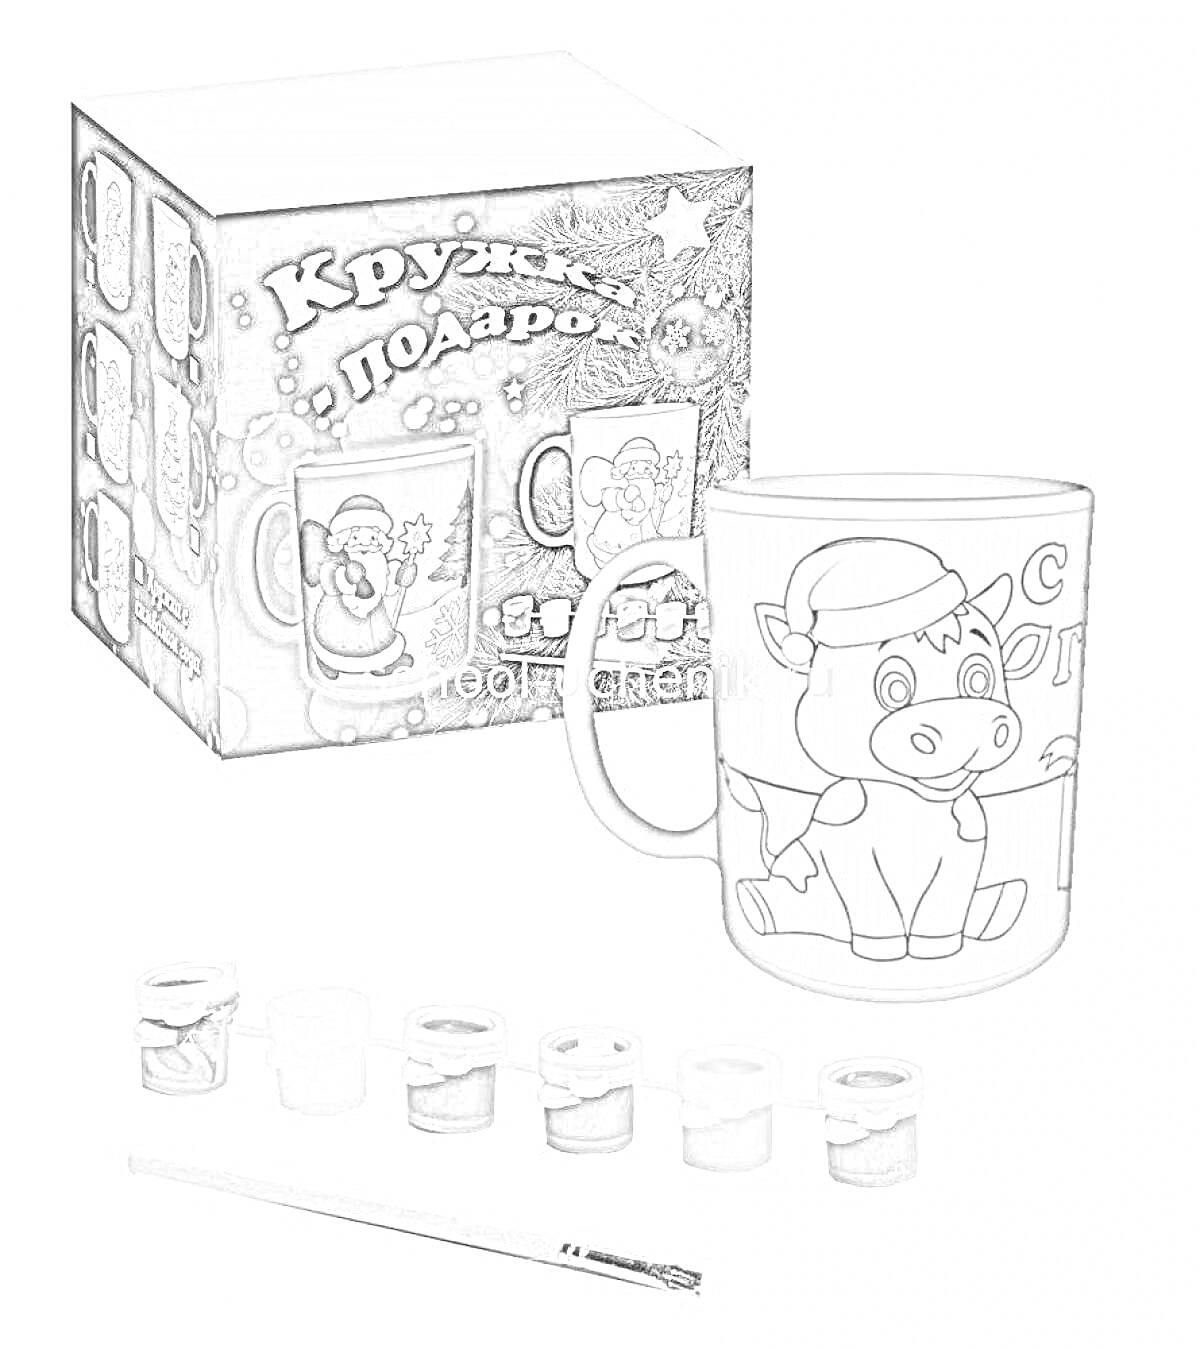 Раскраска Набор для раскрашивания кружки c рисунком коровы и Деда Мороза, упаковочная коробка, кисточка и акриловые краски